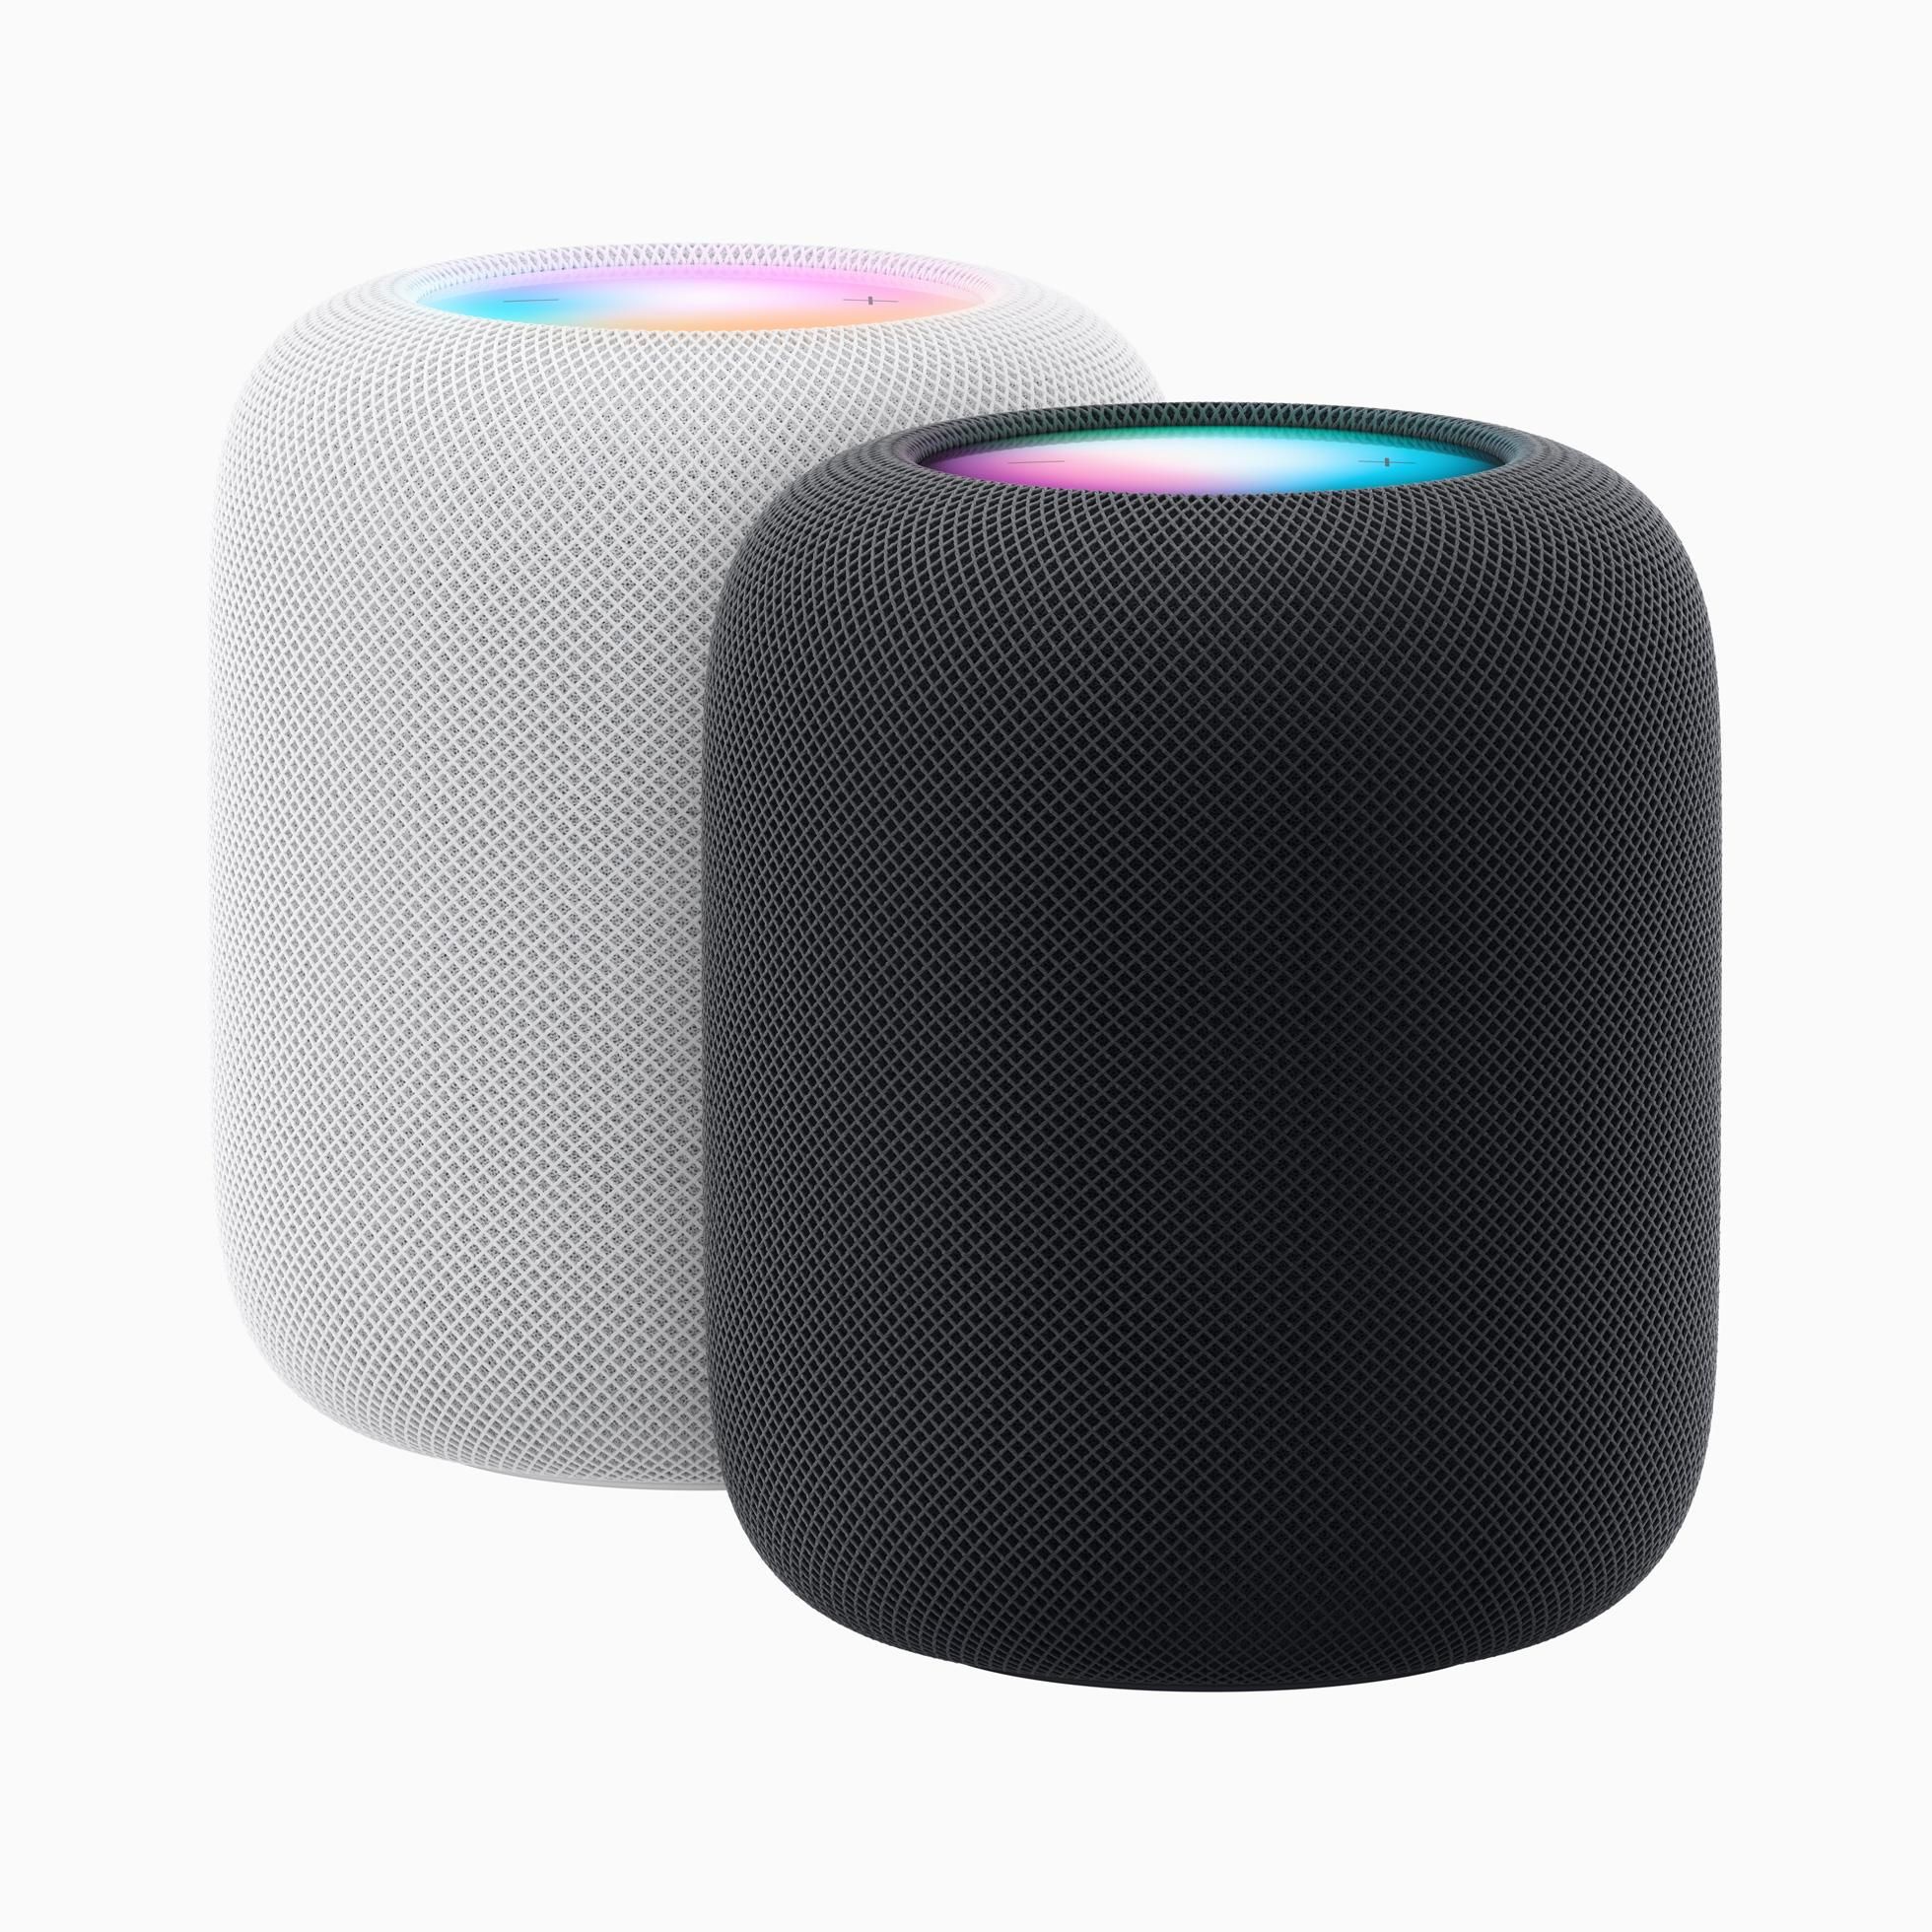 a photo of Apple HomePod 2nd Gen Smart Speakers